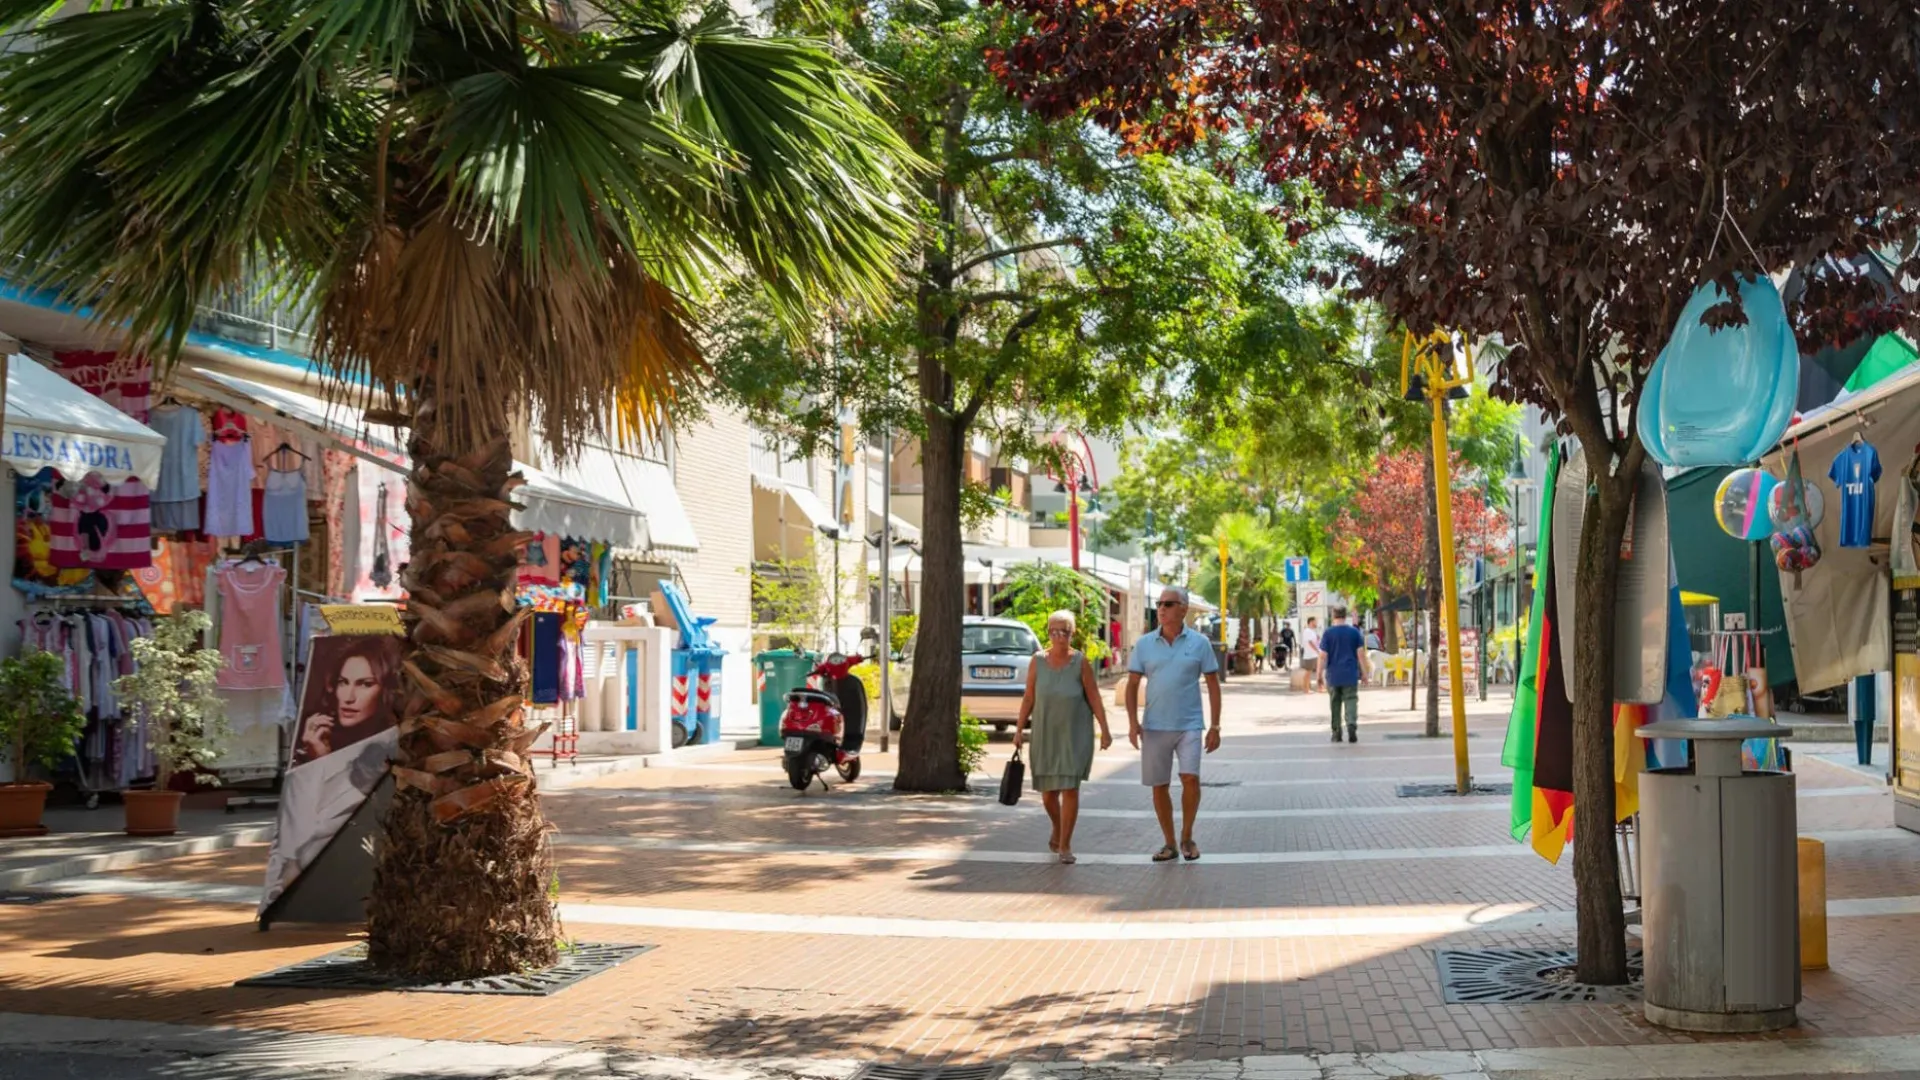 Strada pedonale con negozi, palmizi e persone che passeggiano in una giornata soleggiata.